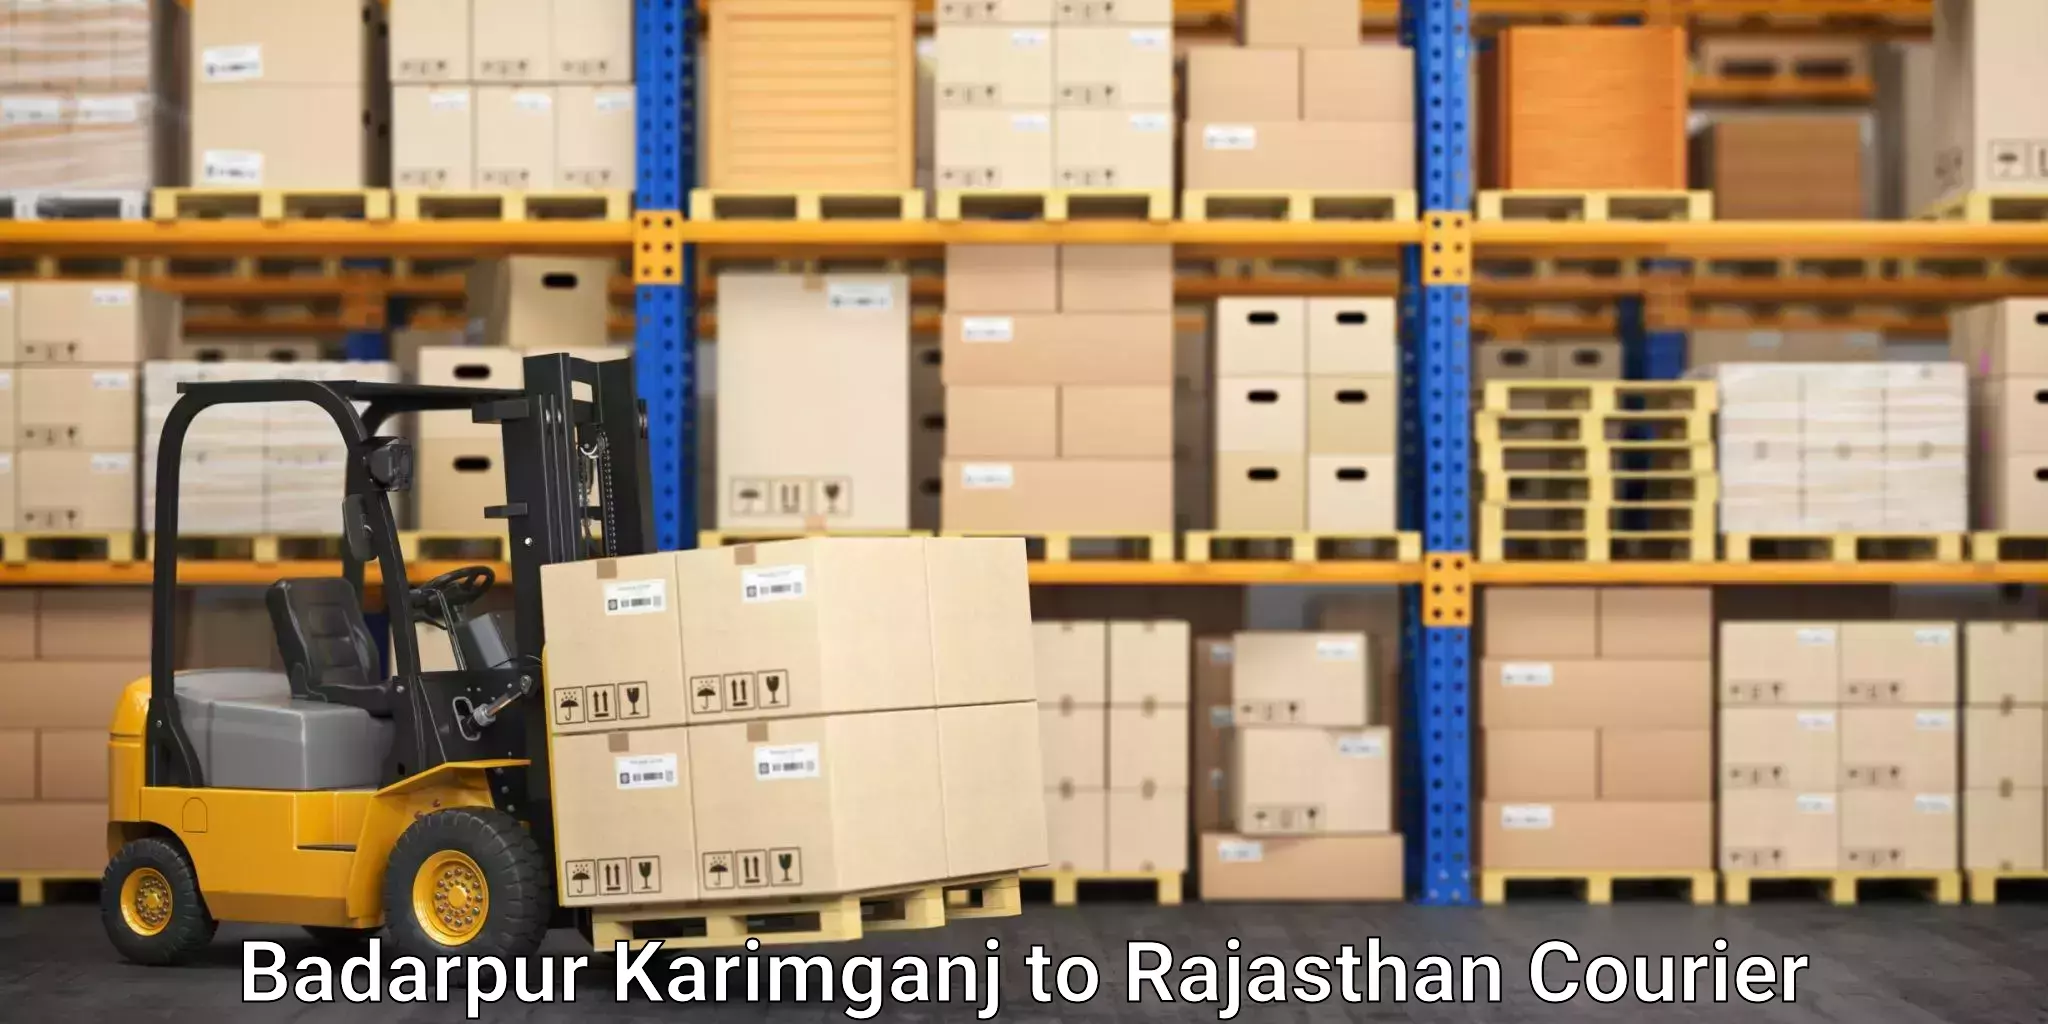 Efficient parcel transport Badarpur Karimganj to Alwar